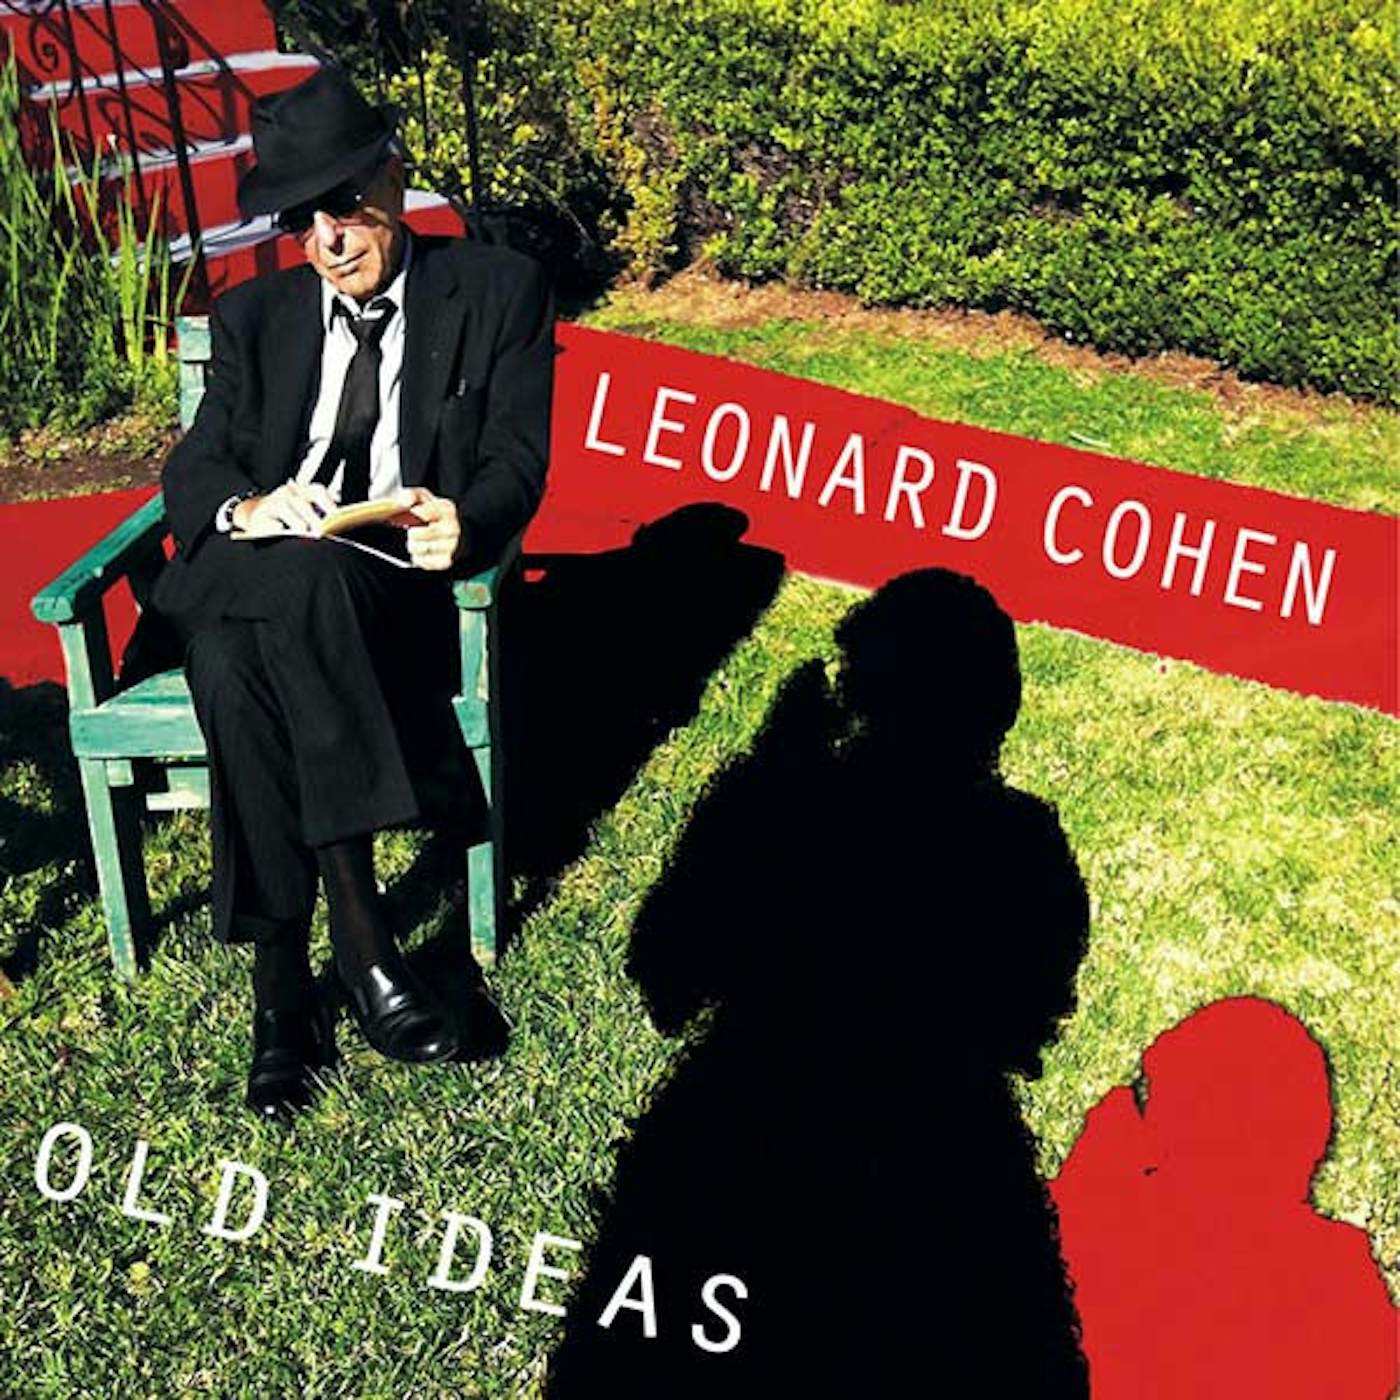 Leonard Cohen Old Ideas CD